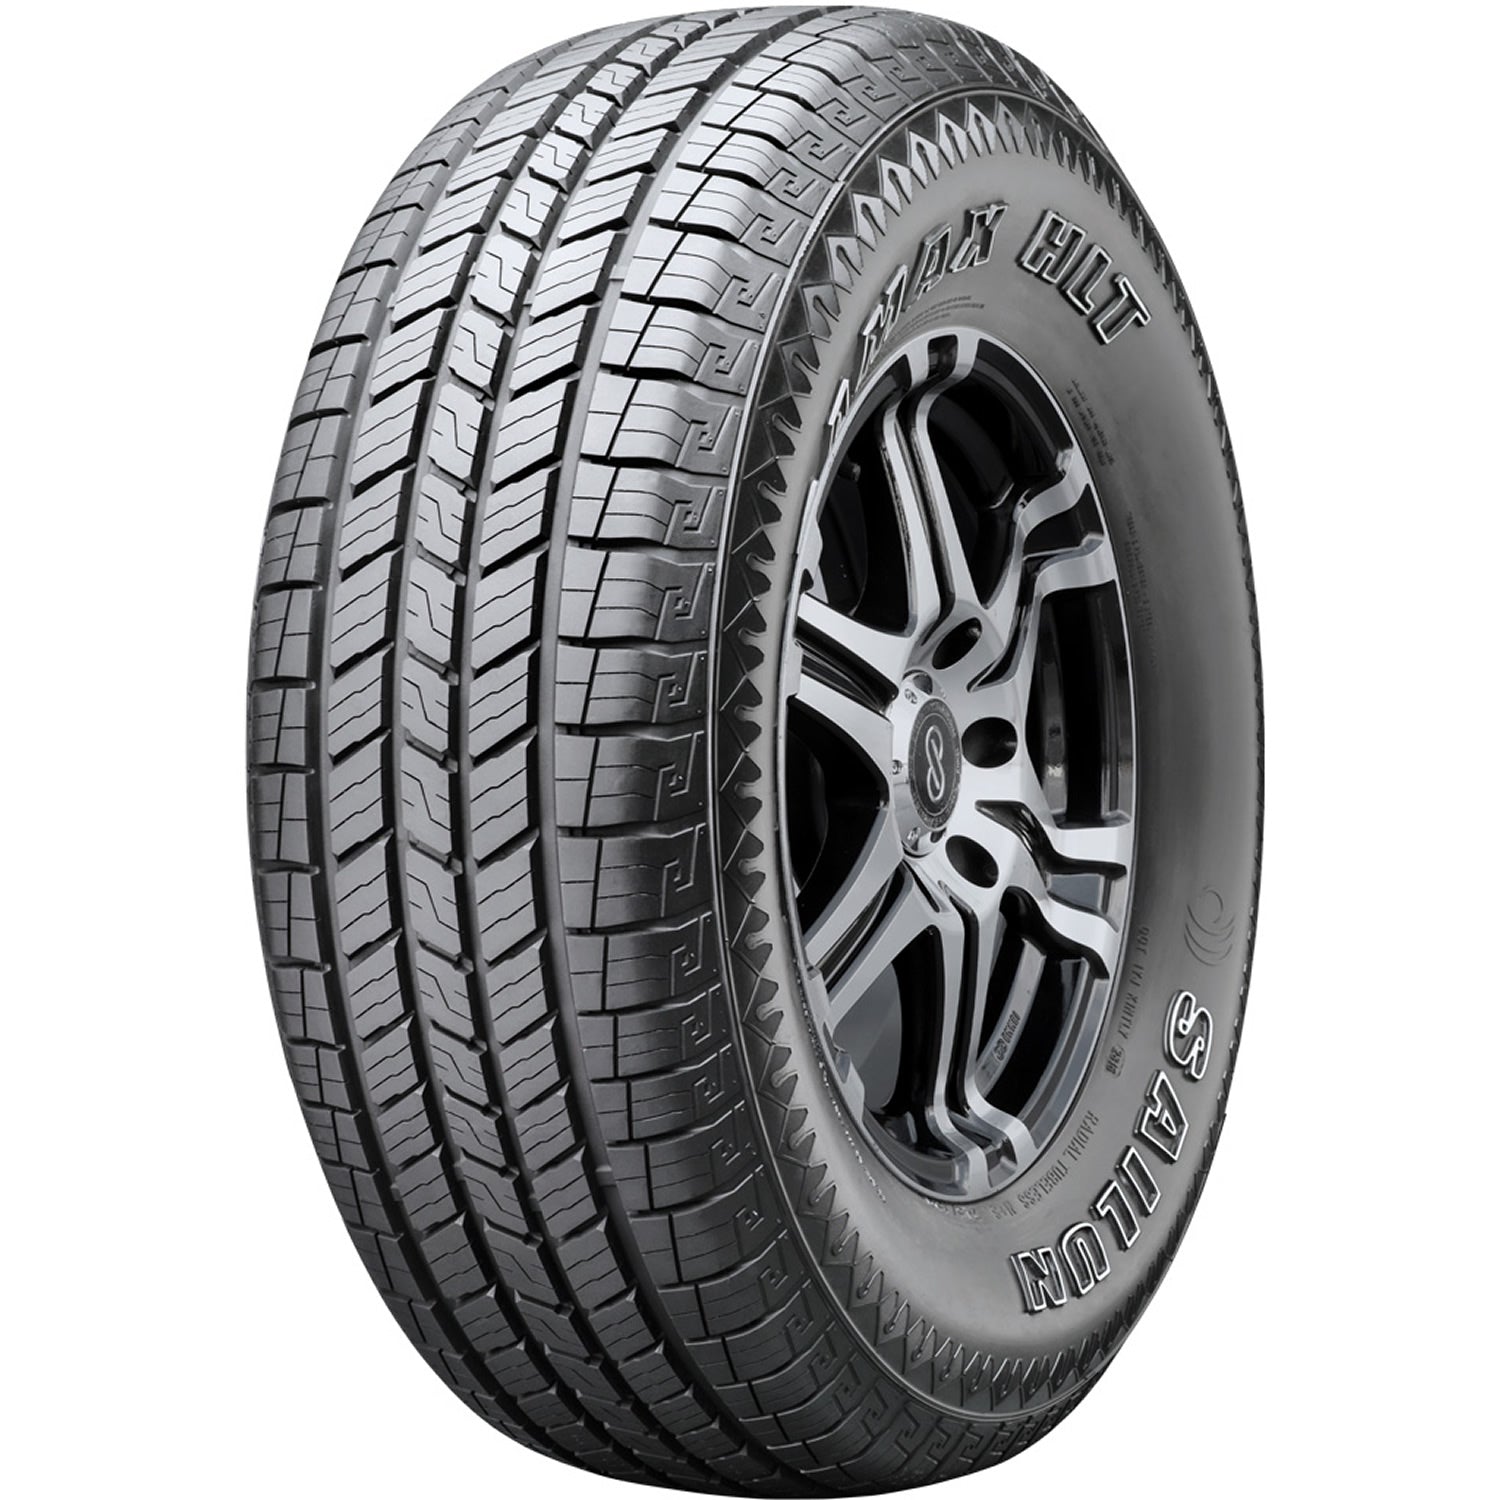 SAILUN TERRAMAX HLT 275/65R18 (32.1X11R 18) Tires